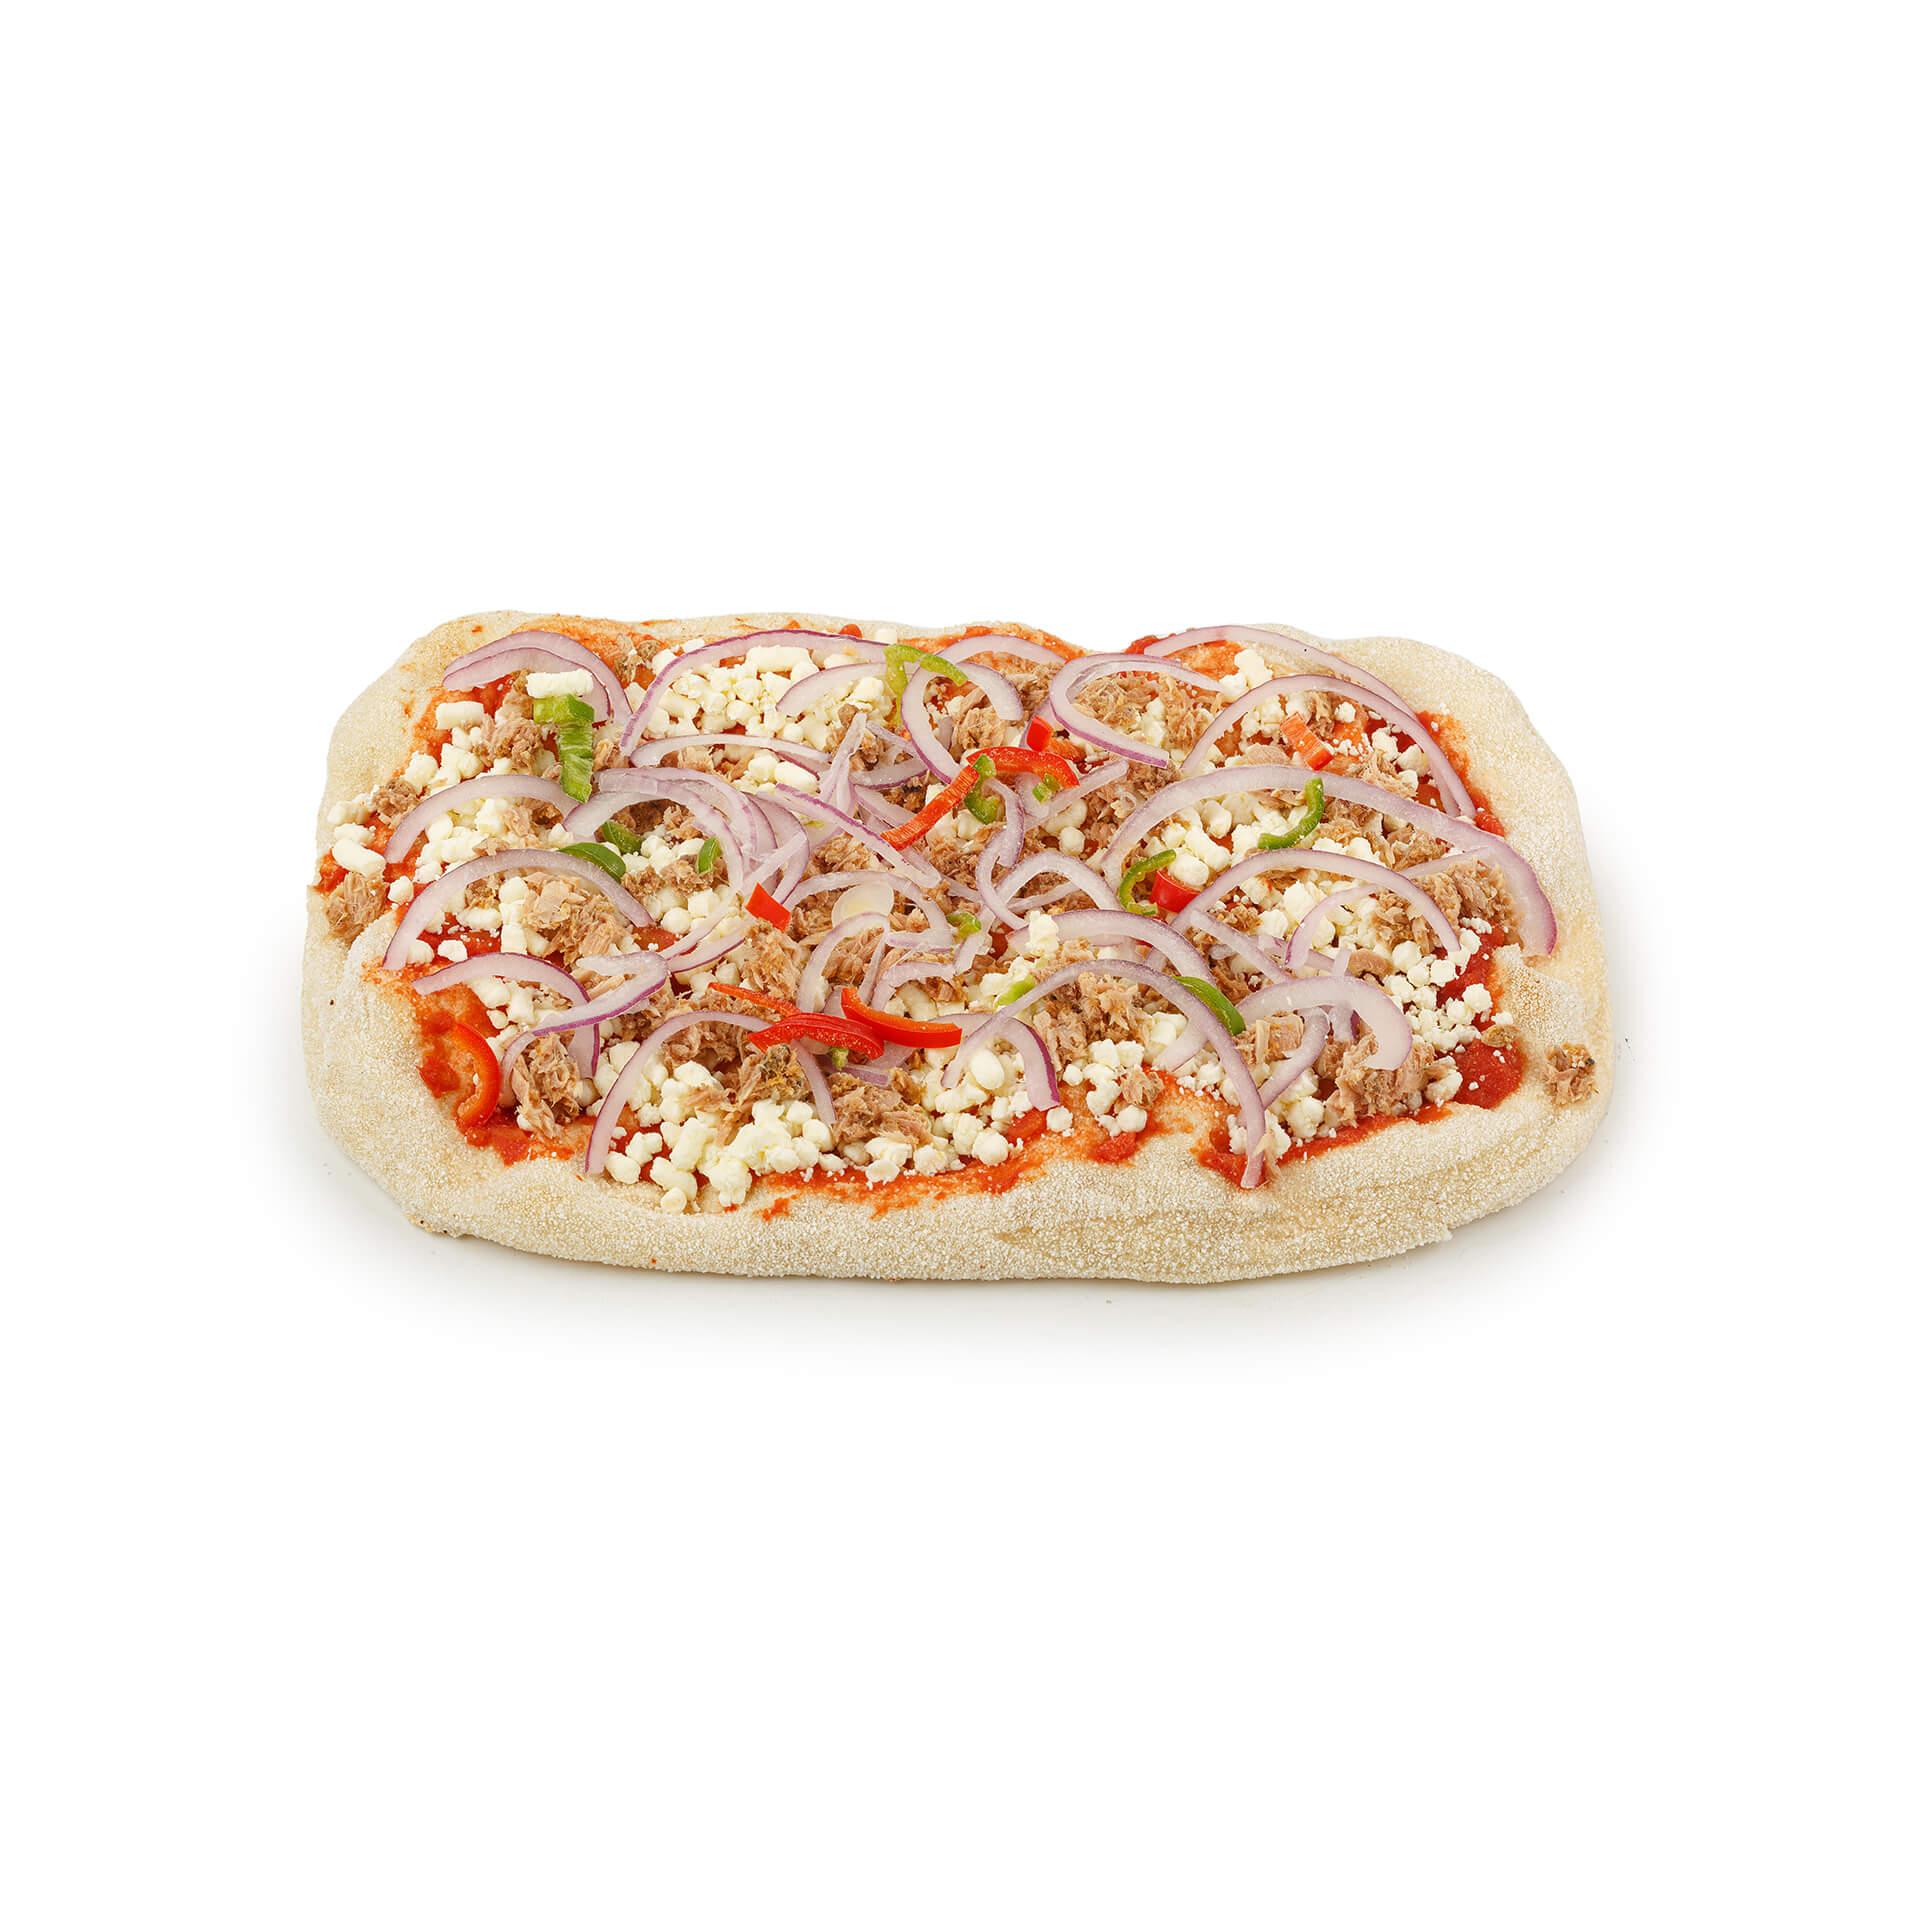 Римская пицца Maestrello Тунец и лук с тунцом красным луком и перцем чили 425 гр., картон